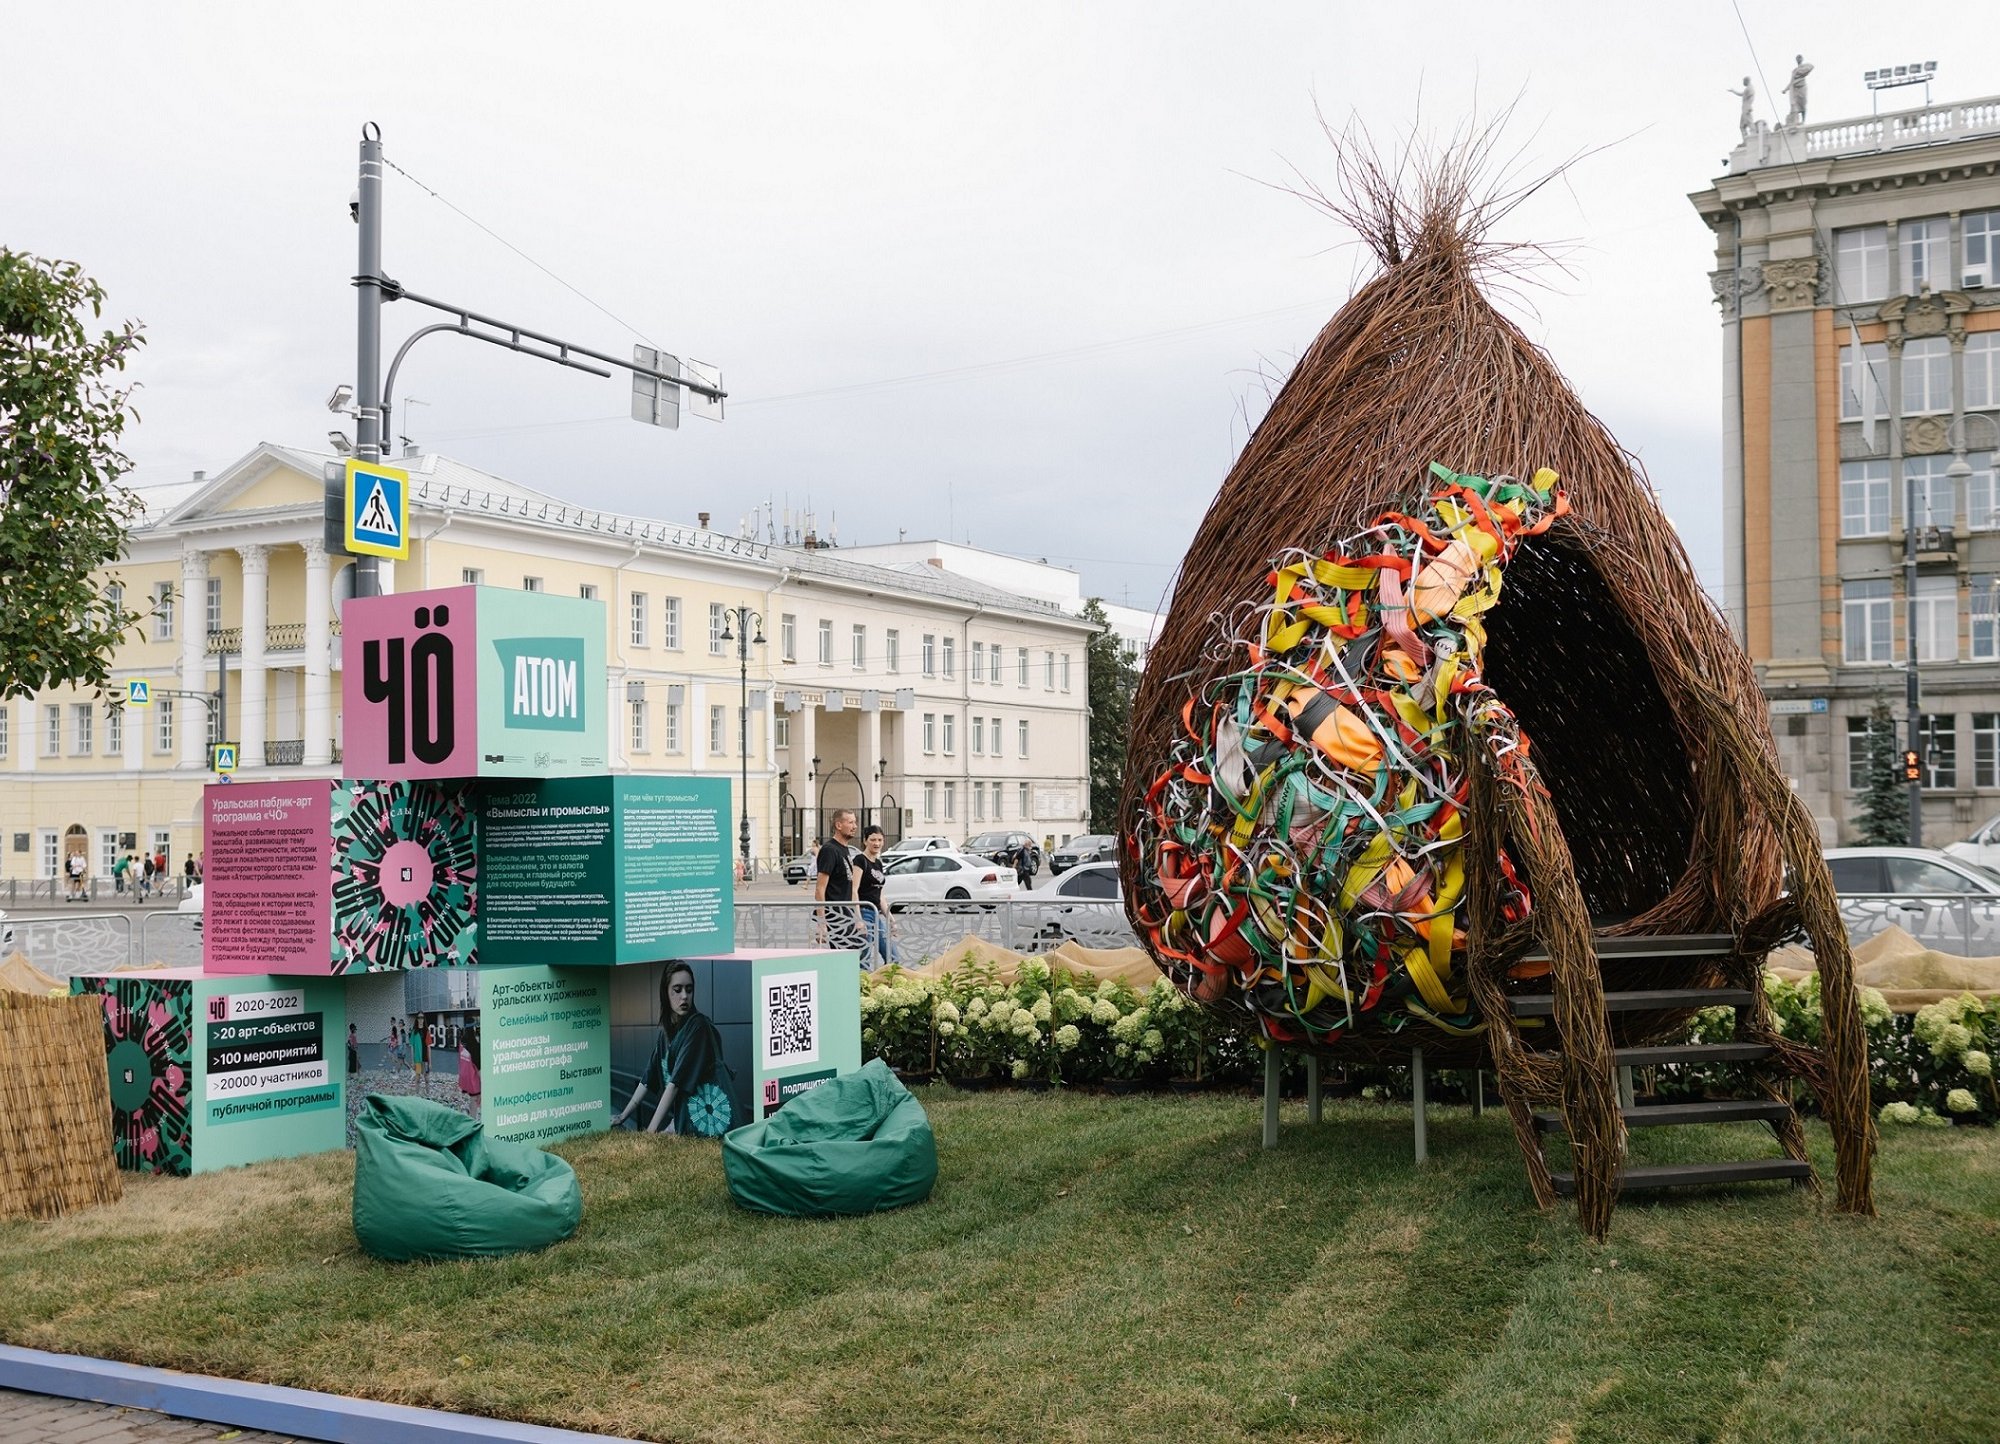 «Атомстройкомплекс» установил «техногенный» арт-объект на площадке «Атмофеста» в Екатеринбурге